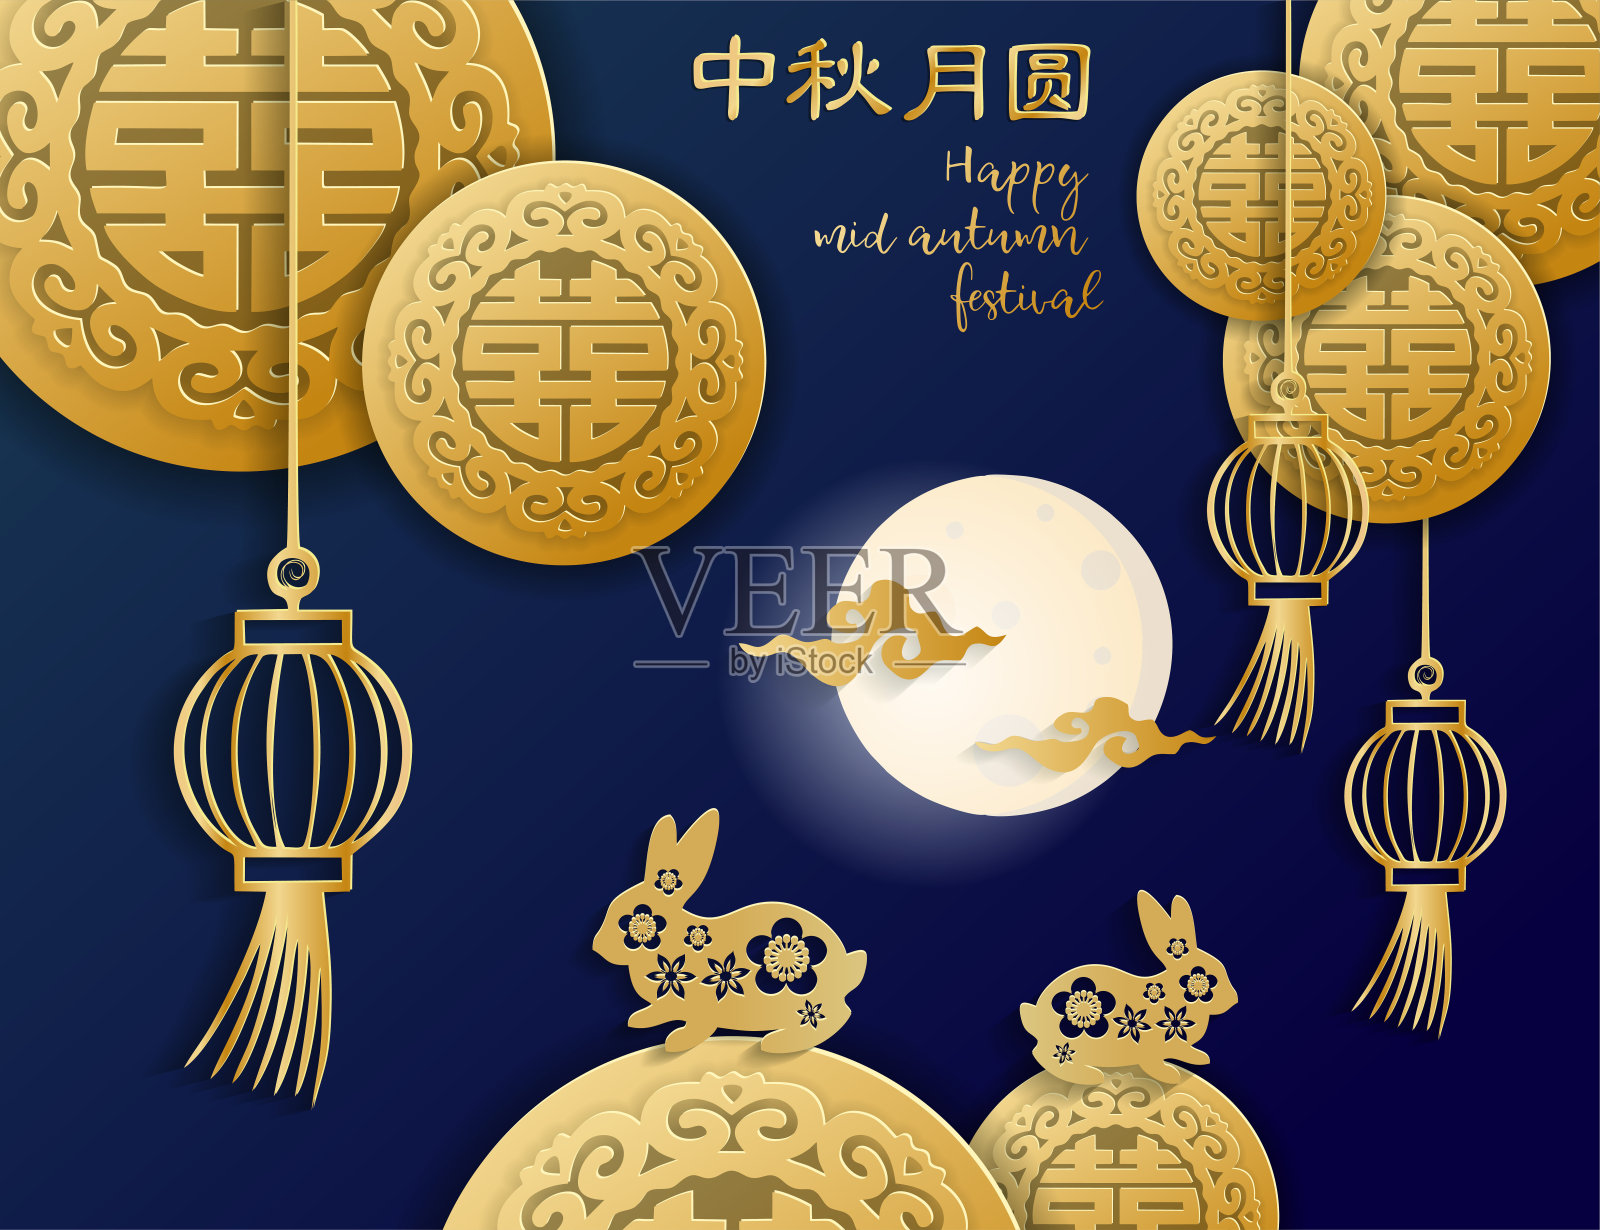 矢量中秋用剪纸艺术工艺风格在深蓝色的背景上用金色中国双喜象征，月亮，云彩，两只兔子在花图案。中国的象形文字设计模板素材